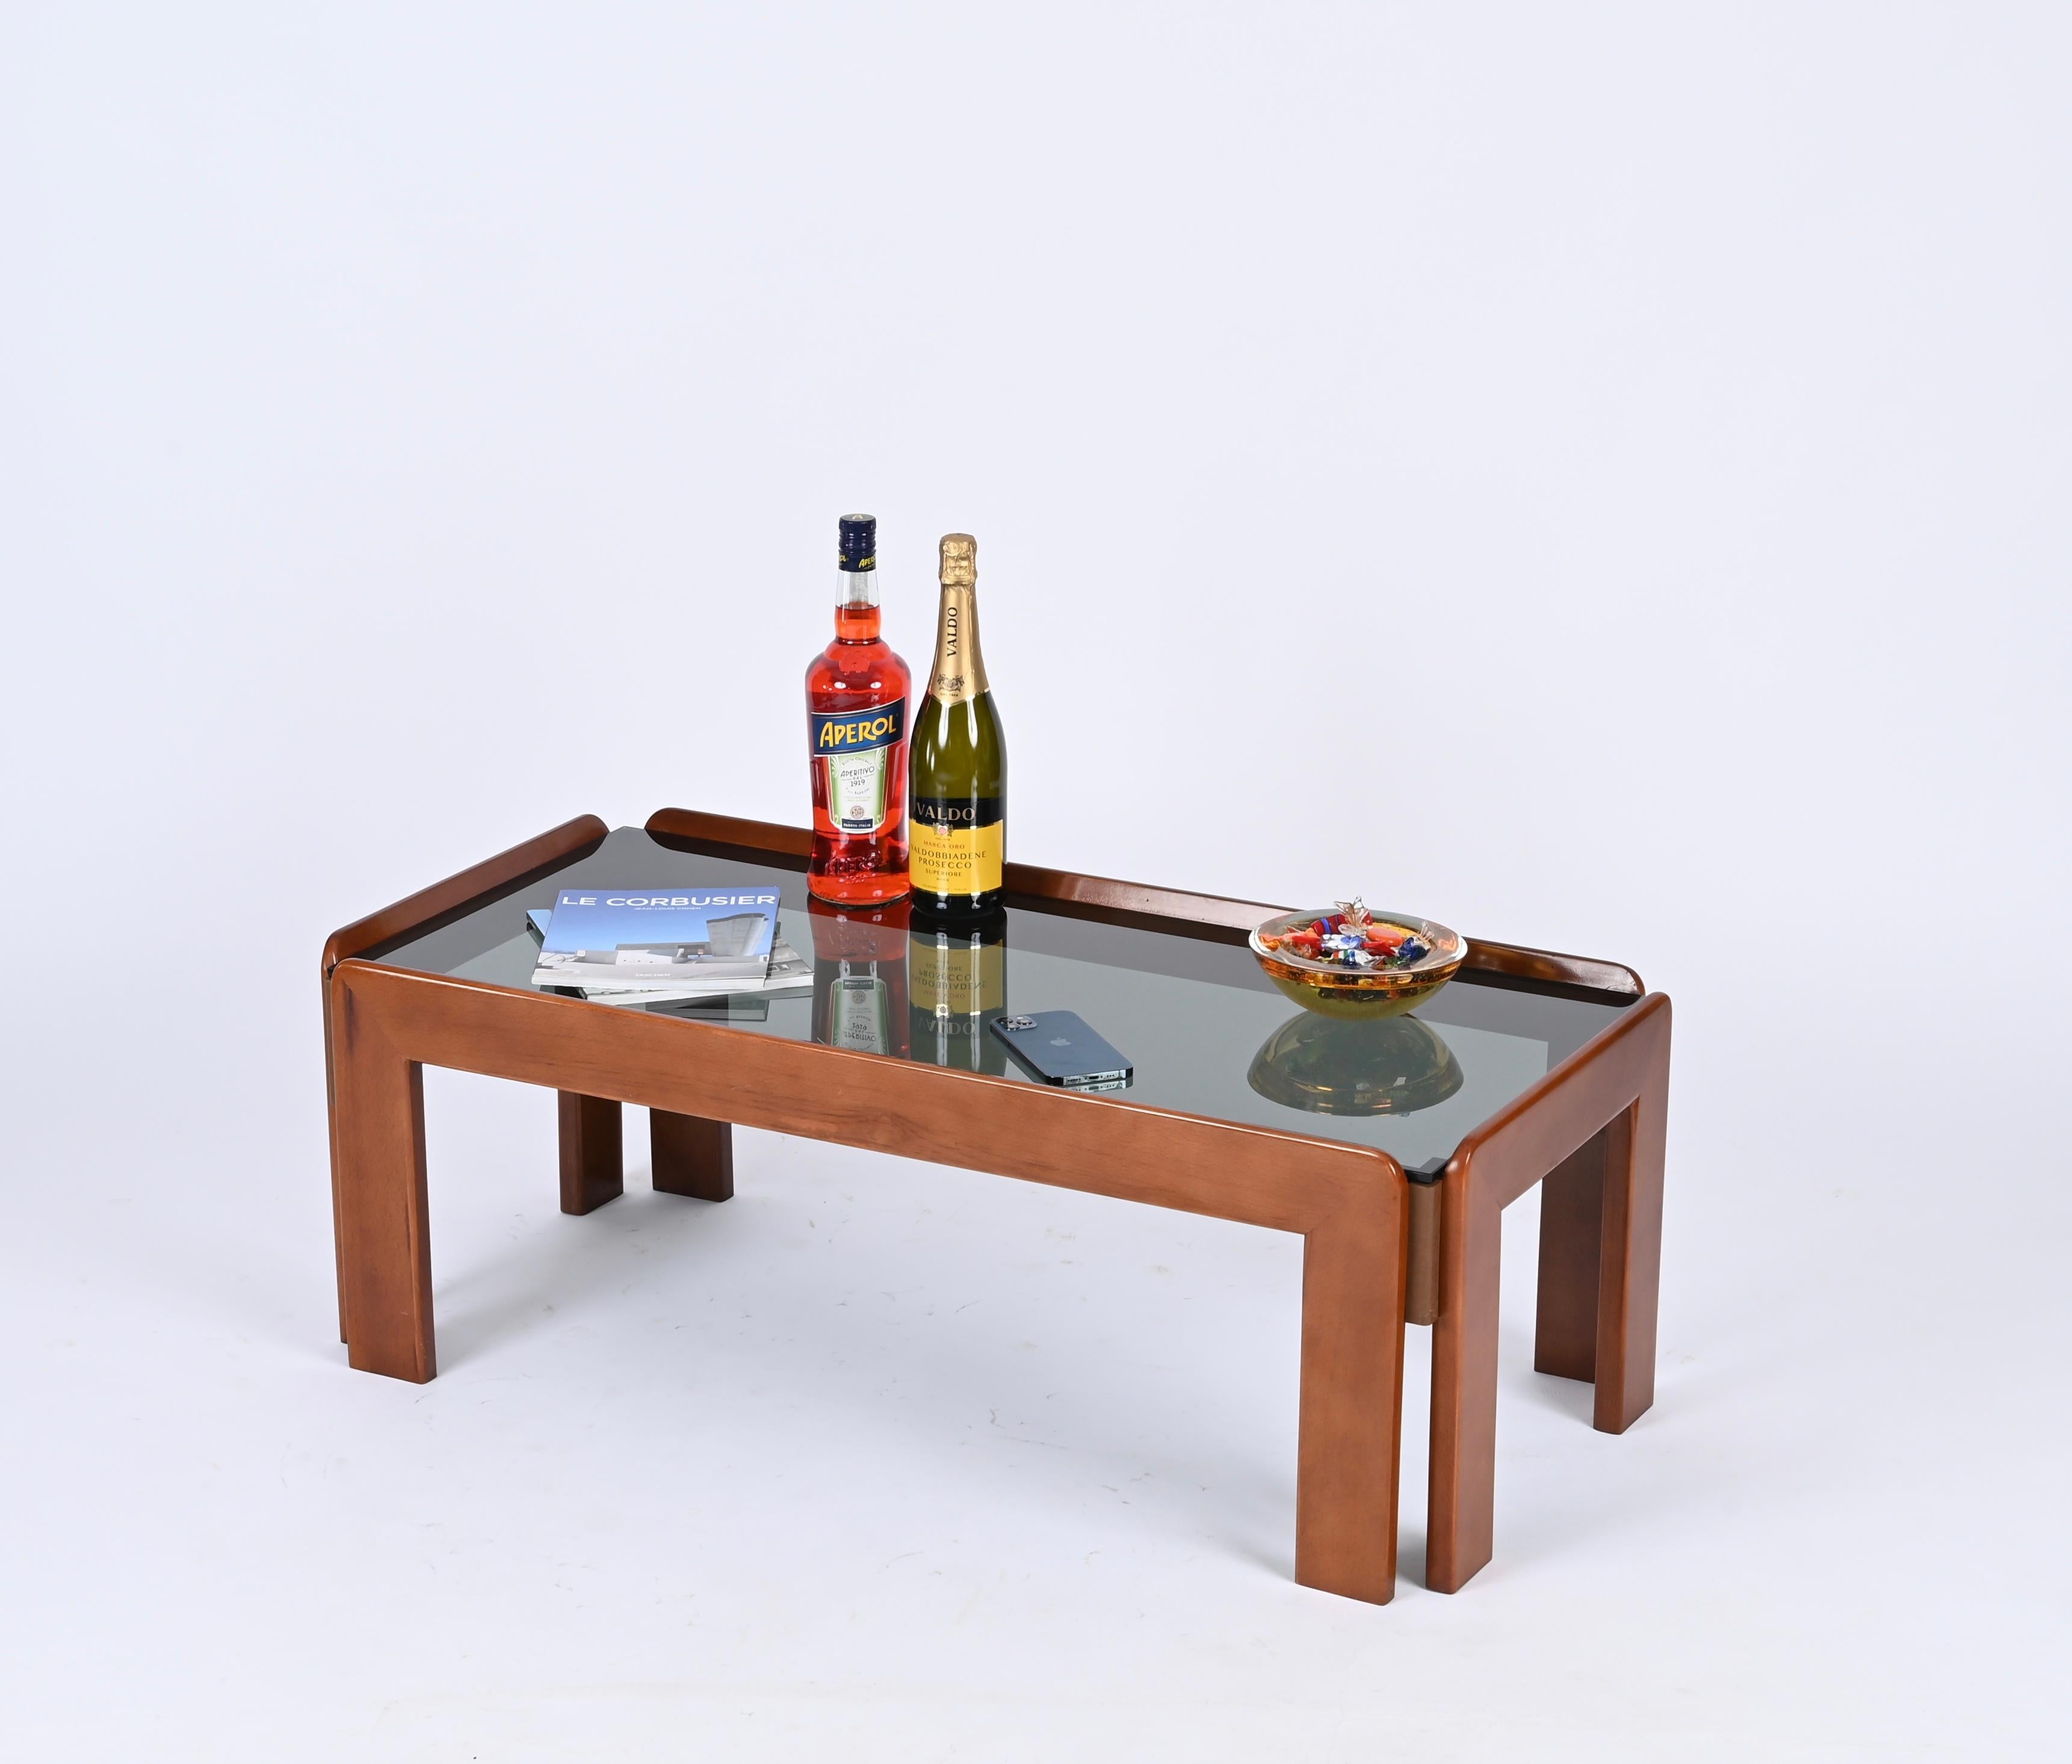 Superbe table basse rectangulaire du milieu du siècle en noyer avec un joli plateau en verre fumé. Cette élégante table basse a été produite en Italie dans les années 1960 par Cassina et conçue par Afra & Tobia Scarpa.

La table basse est fabriquée